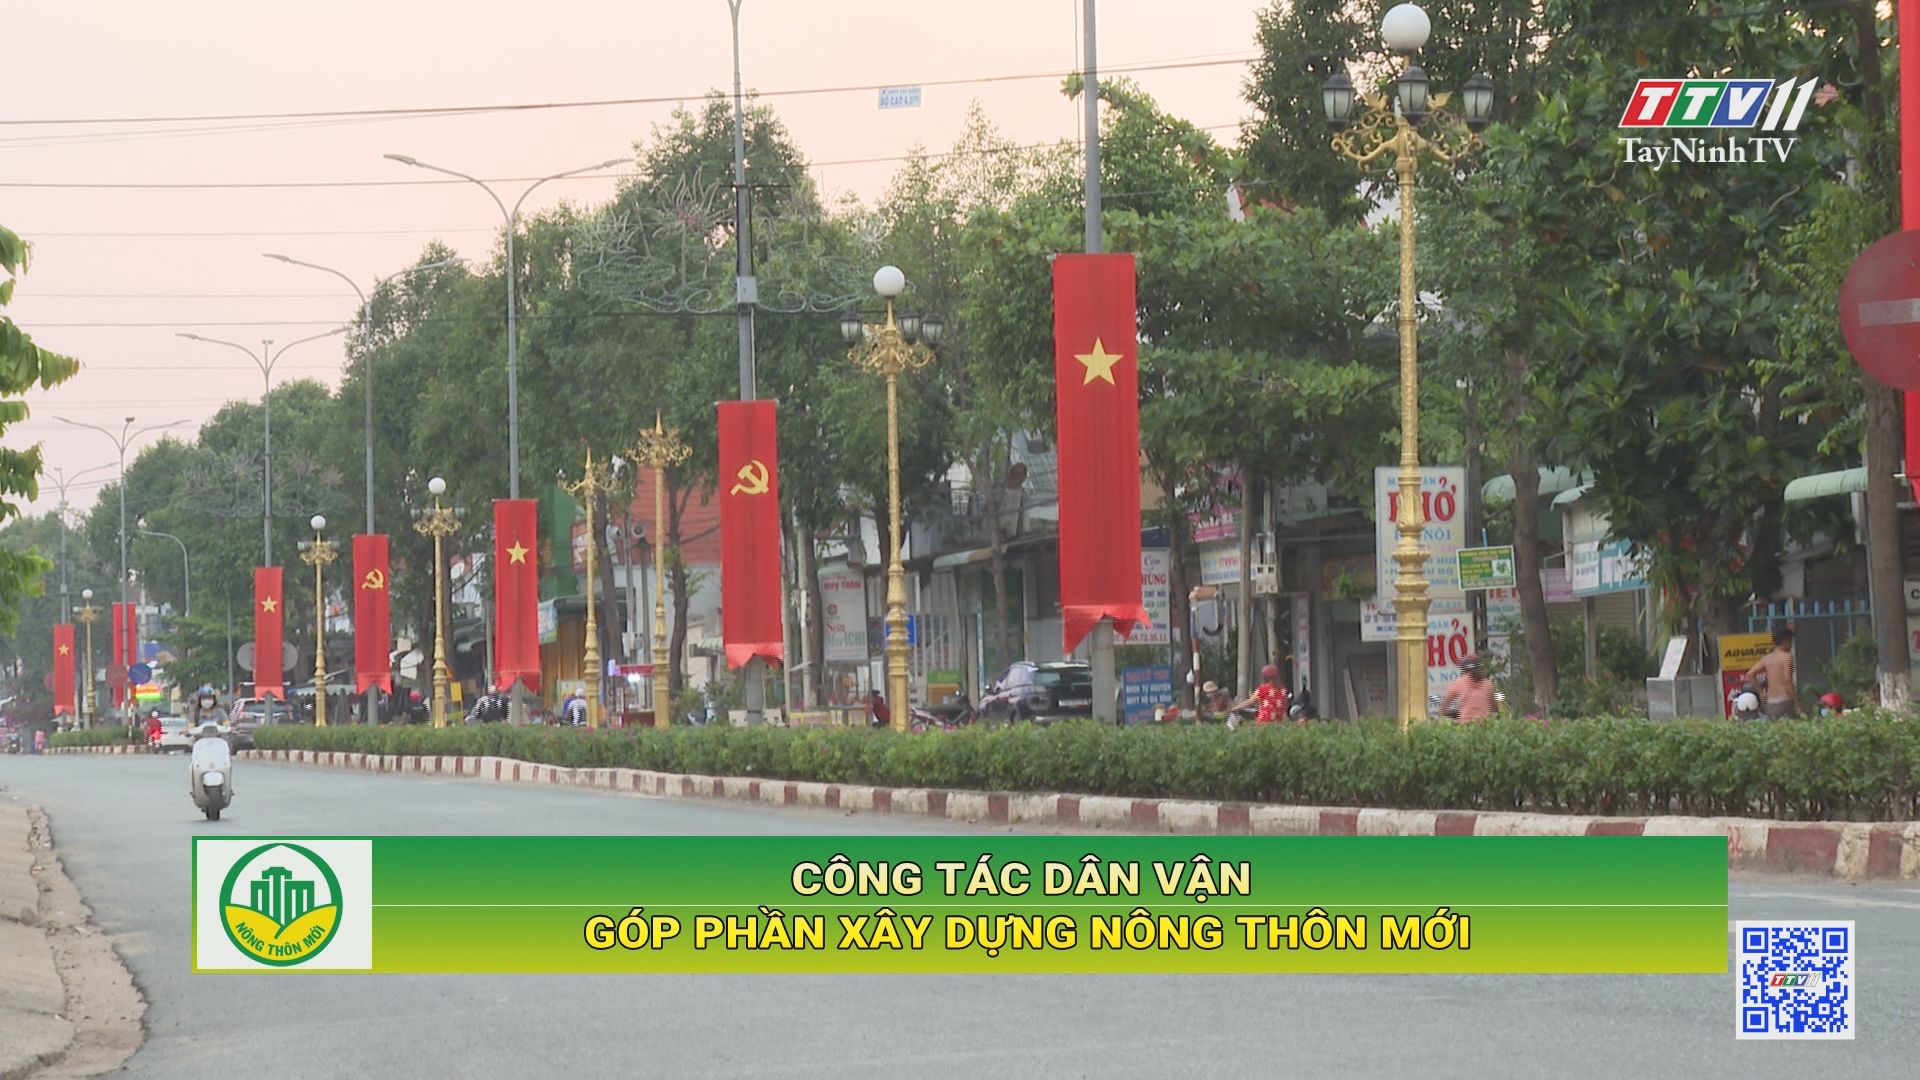 Công tác dân vận góp phần xây dựng nông thôn mới | Tây Ninh xây dựng nông thôn mới | TayNinhTV